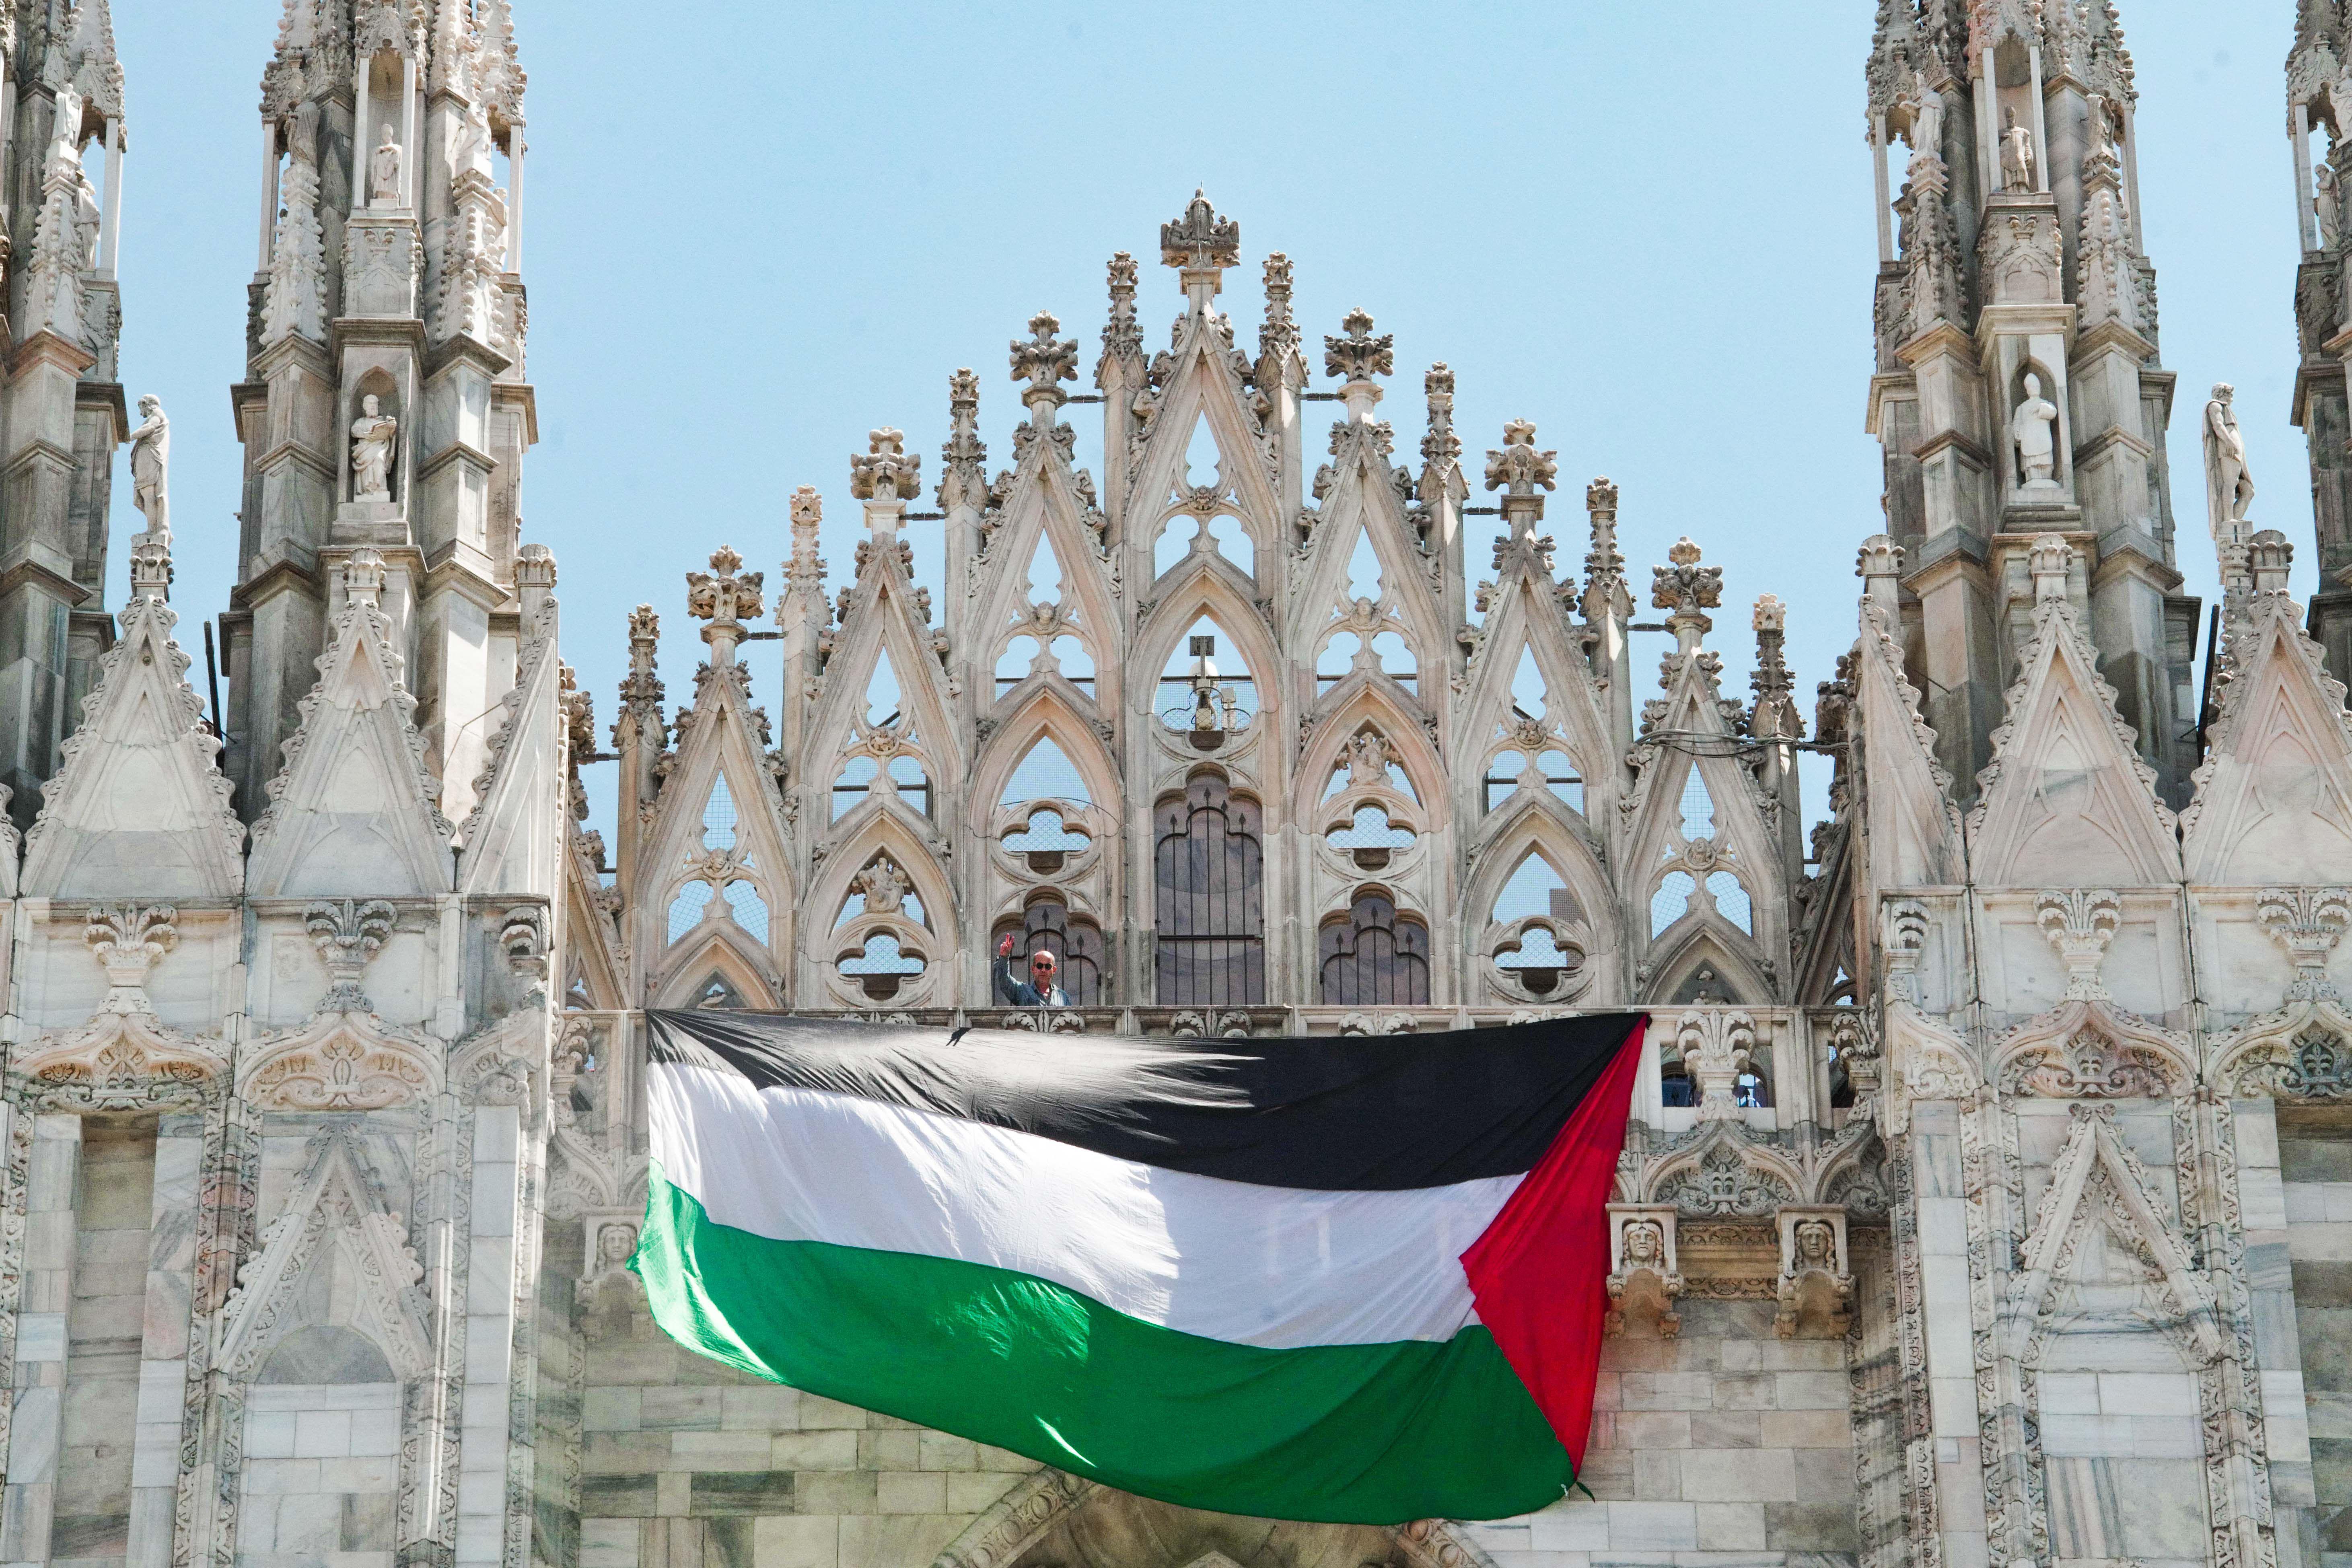 Nuovo blitz di Apuzzo - srotola bandiera della Palestina sul Duomo di Milano